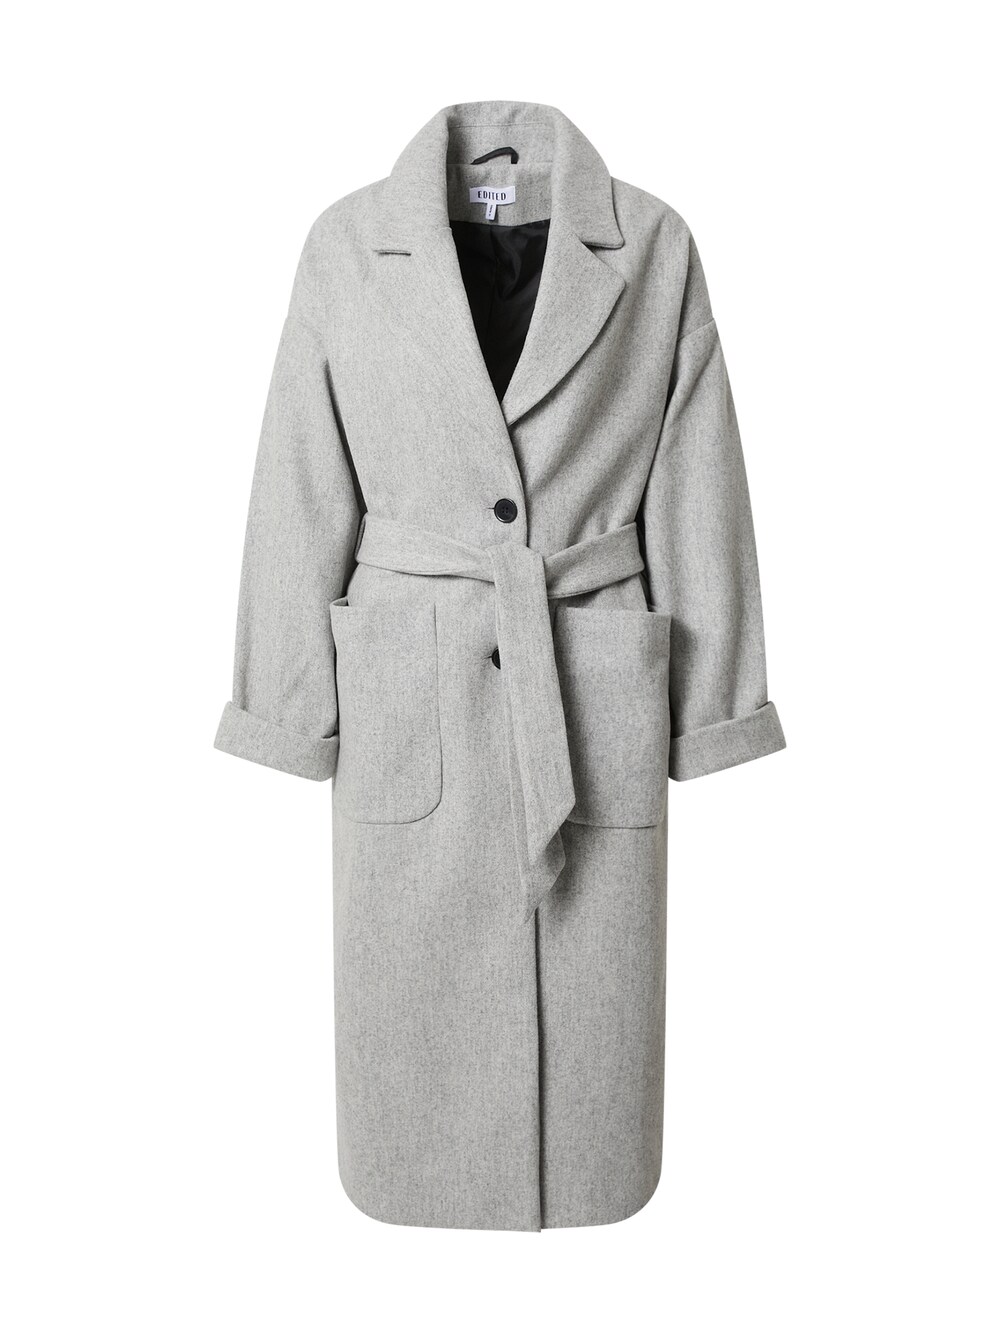 Межсезонное пальто EDITED Santo, пестрый серый межсезонное пальто edited ekaterina пестрый серый